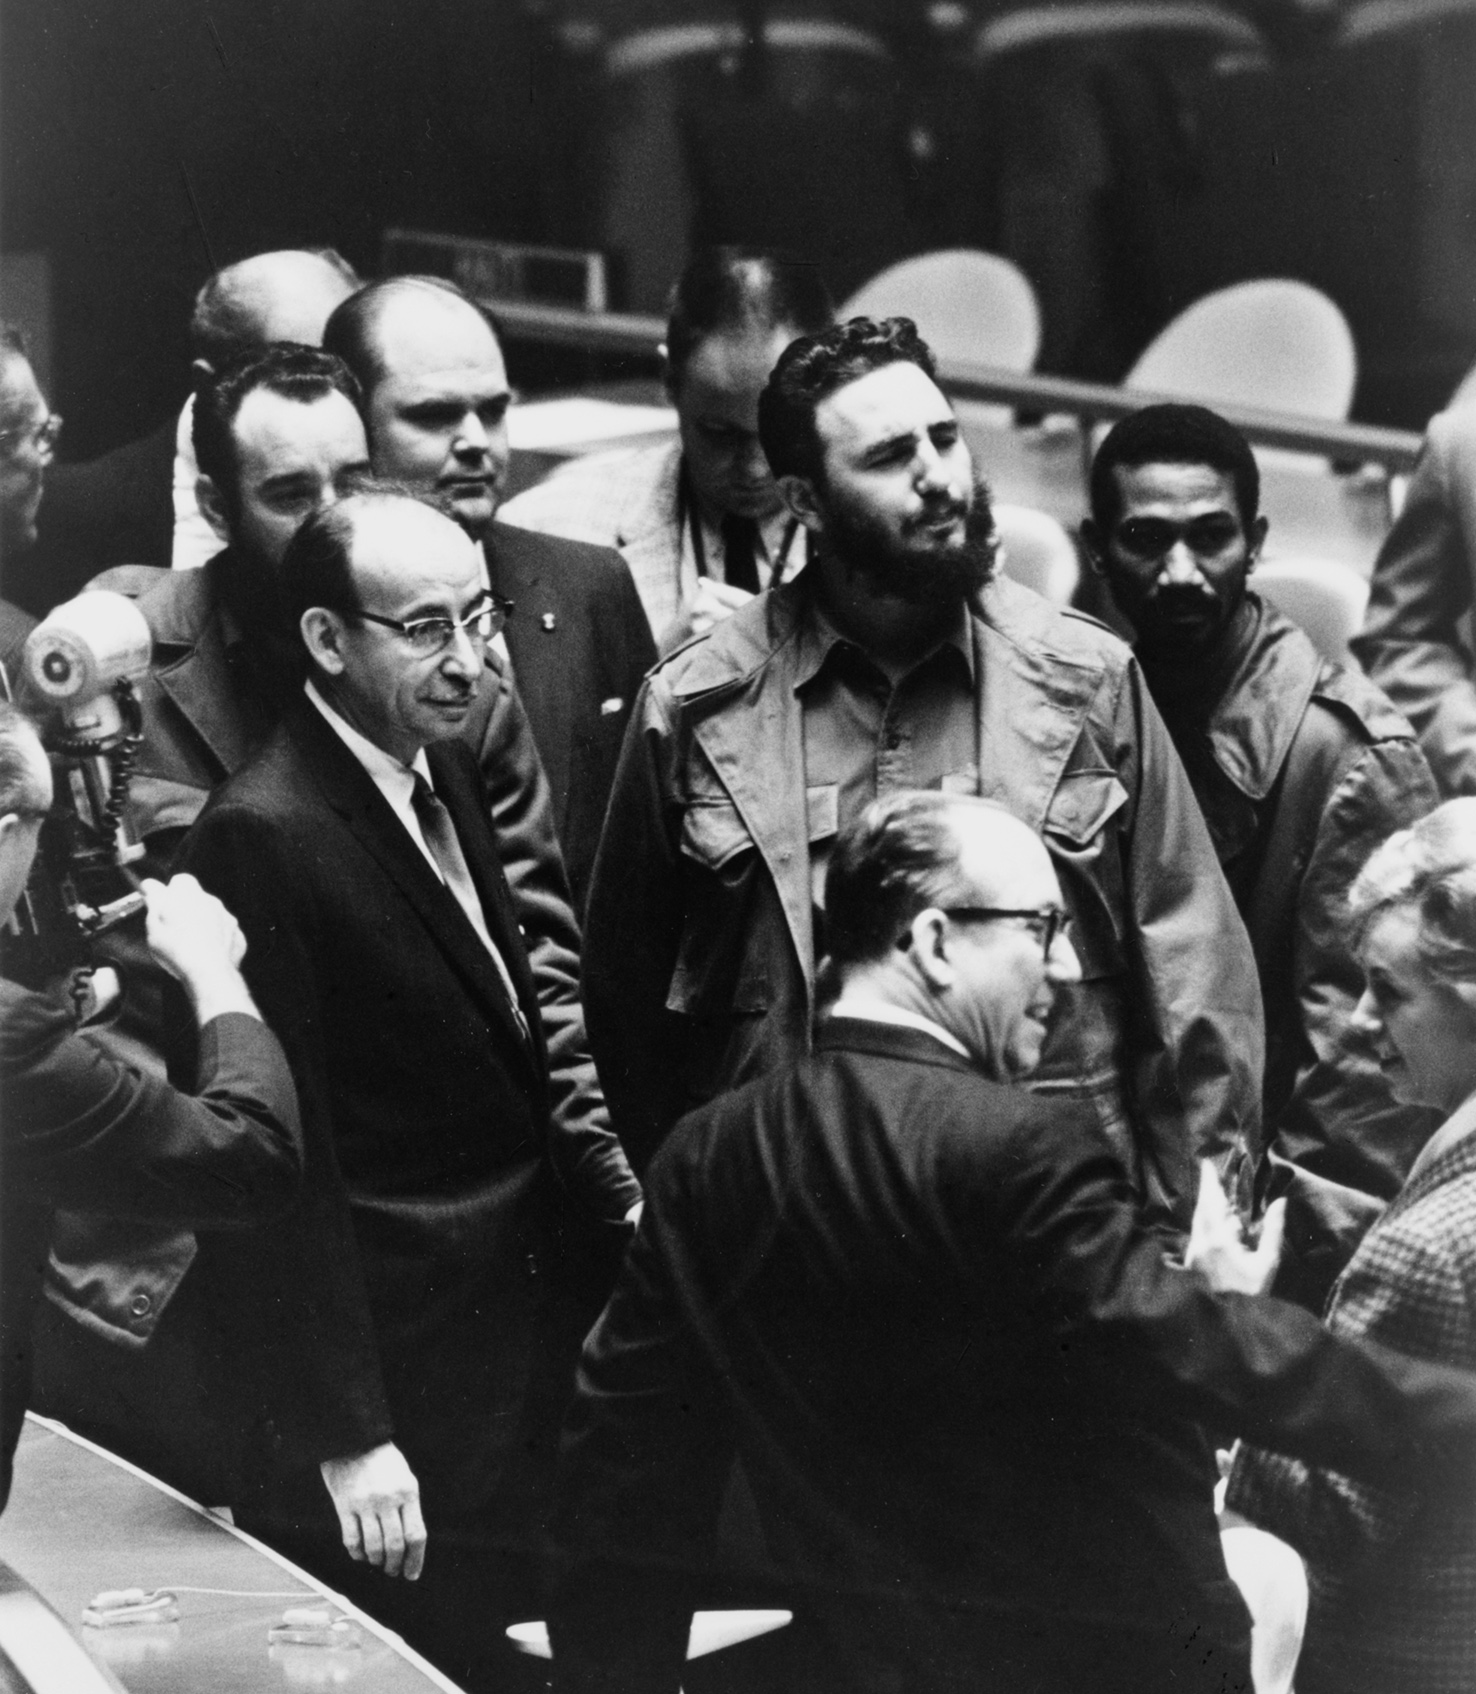 קסטרו באסיפת האו"ם, ספטמבר 1960 (צילום: Warren K. Leffler, ספריית הקונגרס האמריקני)